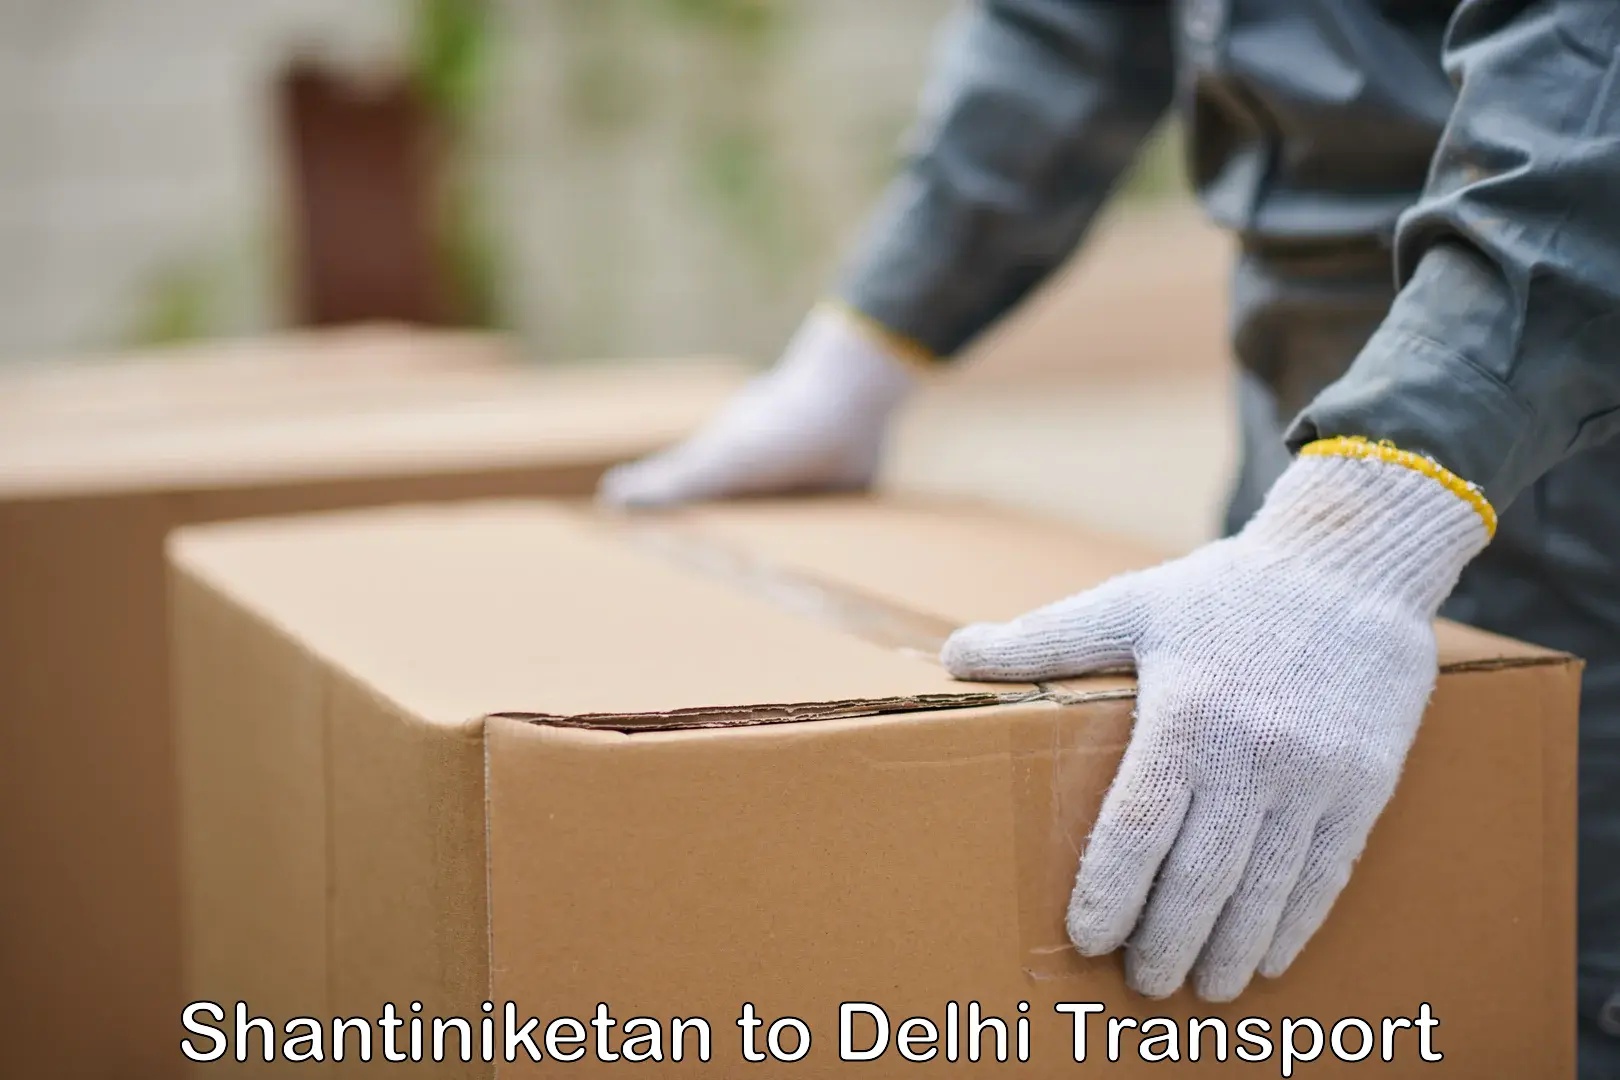 Interstate transport services Shantiniketan to IIT Delhi